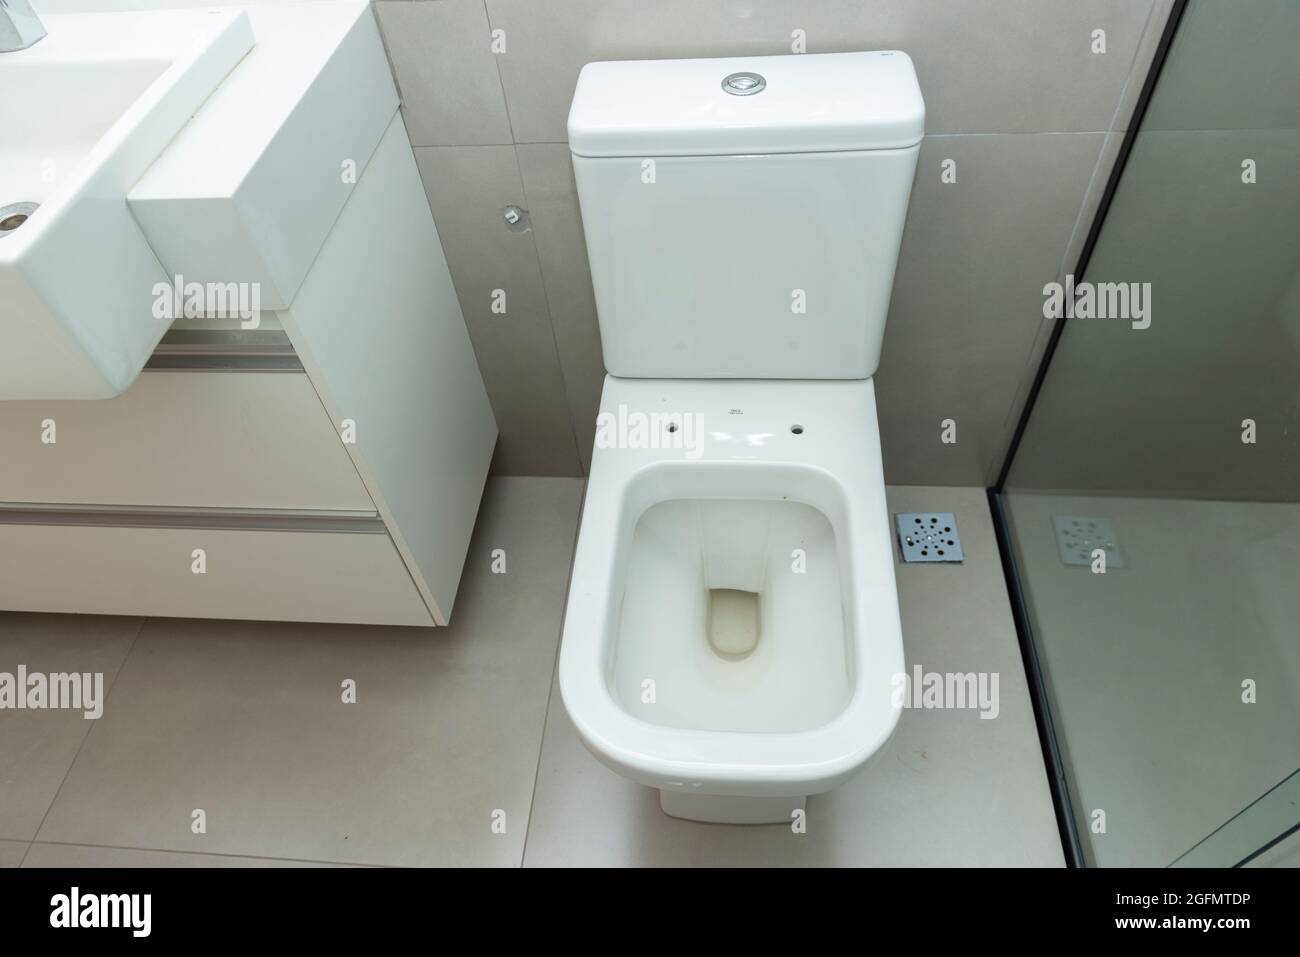 Blick von oben auf die saubere weiße Toilettenschüssel in einem modernen  Badezimmer. Toilette ohne Deckel, um zwischen dem Waschbecken und der  Dusche zu sitzen Stockfotografie - Alamy